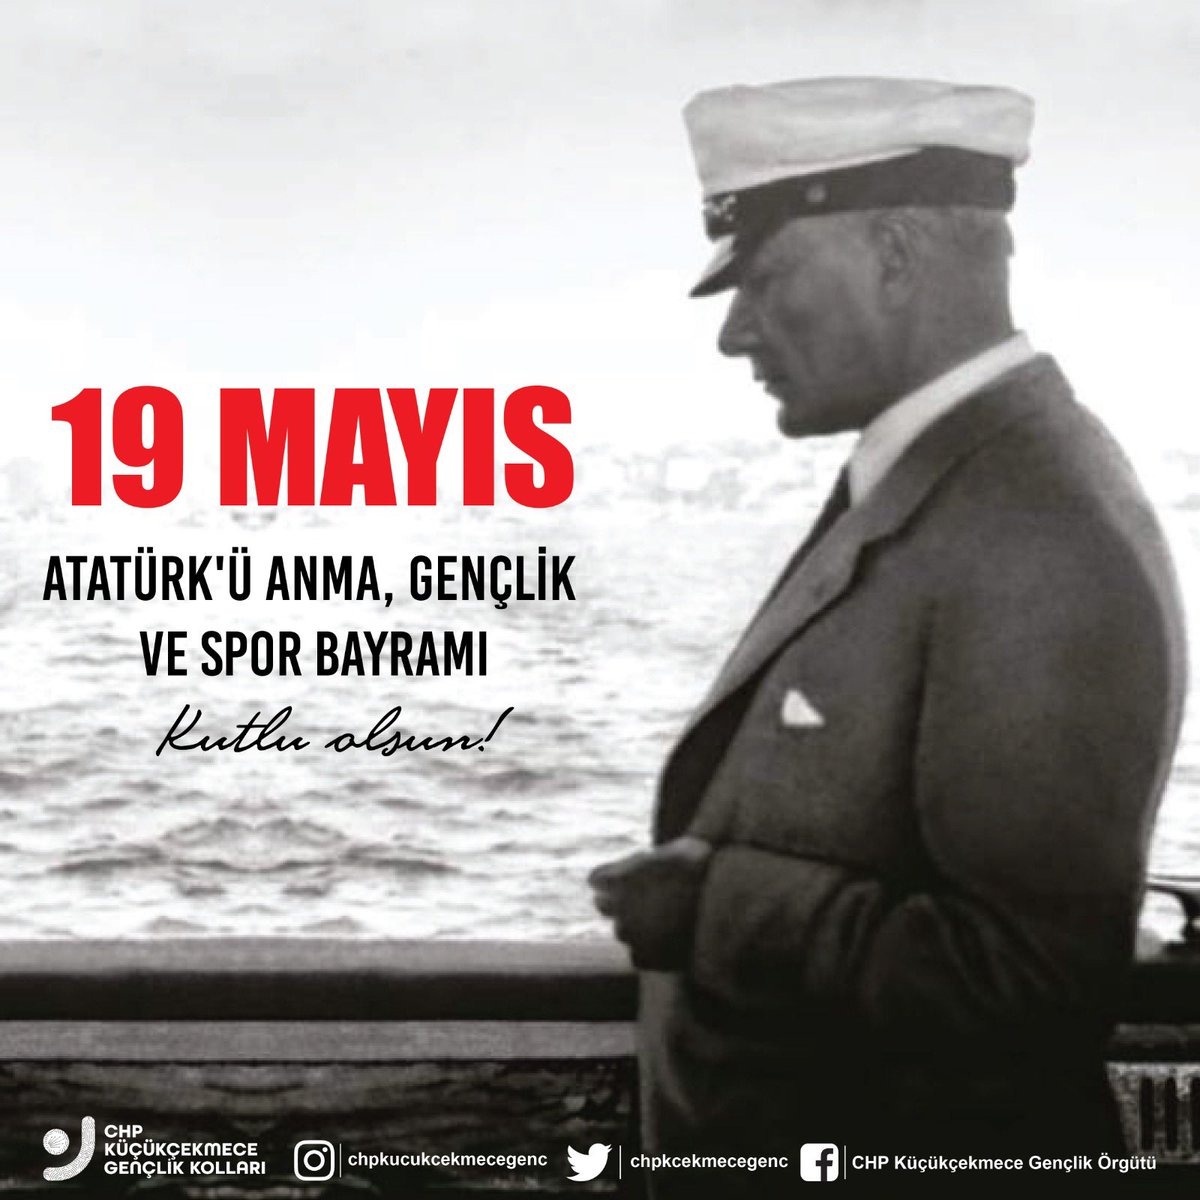 Ey Türk Gençliği! Birinci vazifen Türk istiklâlini, Türk Cumhuriyeti’ni, ilelebet muhafaza ve müdafaa etmektir.

19 Mayıs Atatürk’ü Anma Gençlik ve Spor Bayramınız kutlu olsun.

#MustafaKemalAtatürk
#SaygıveÖzlemle